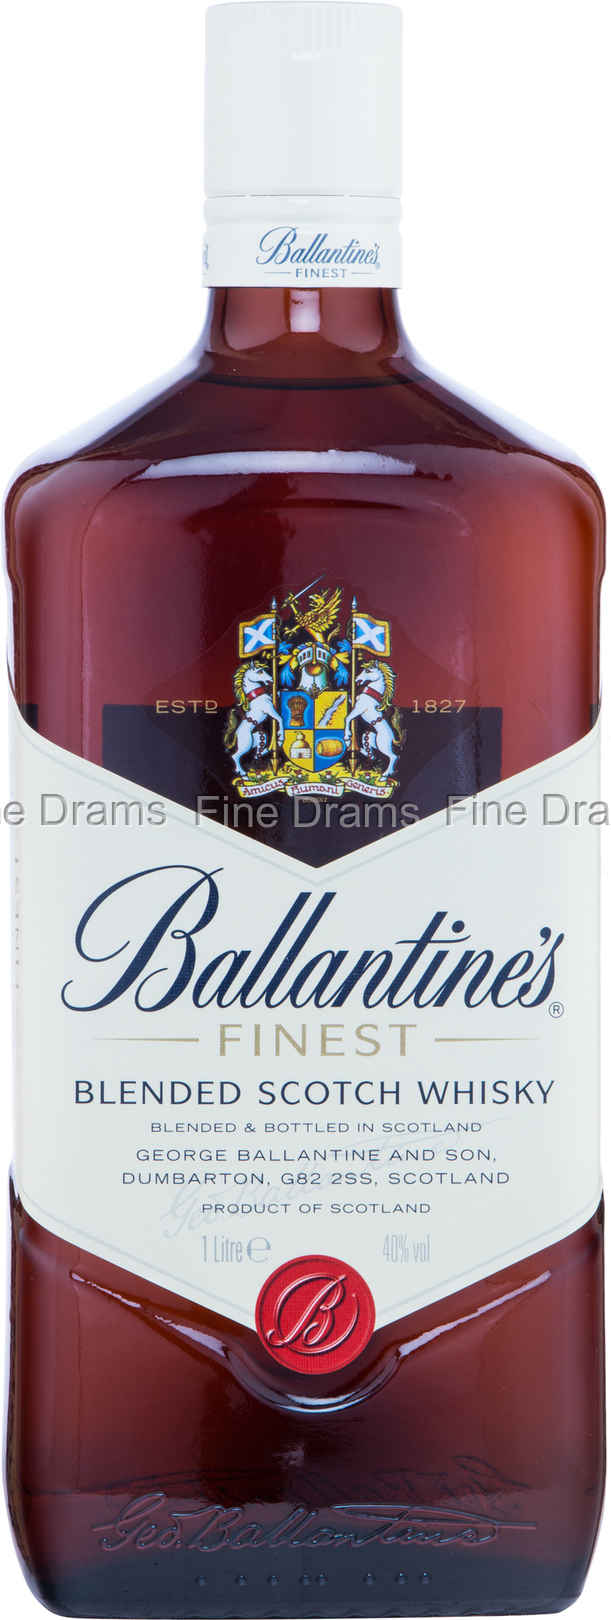 Ballantine's Blended Scotch Whisky Scotland Finest 1L Bottle